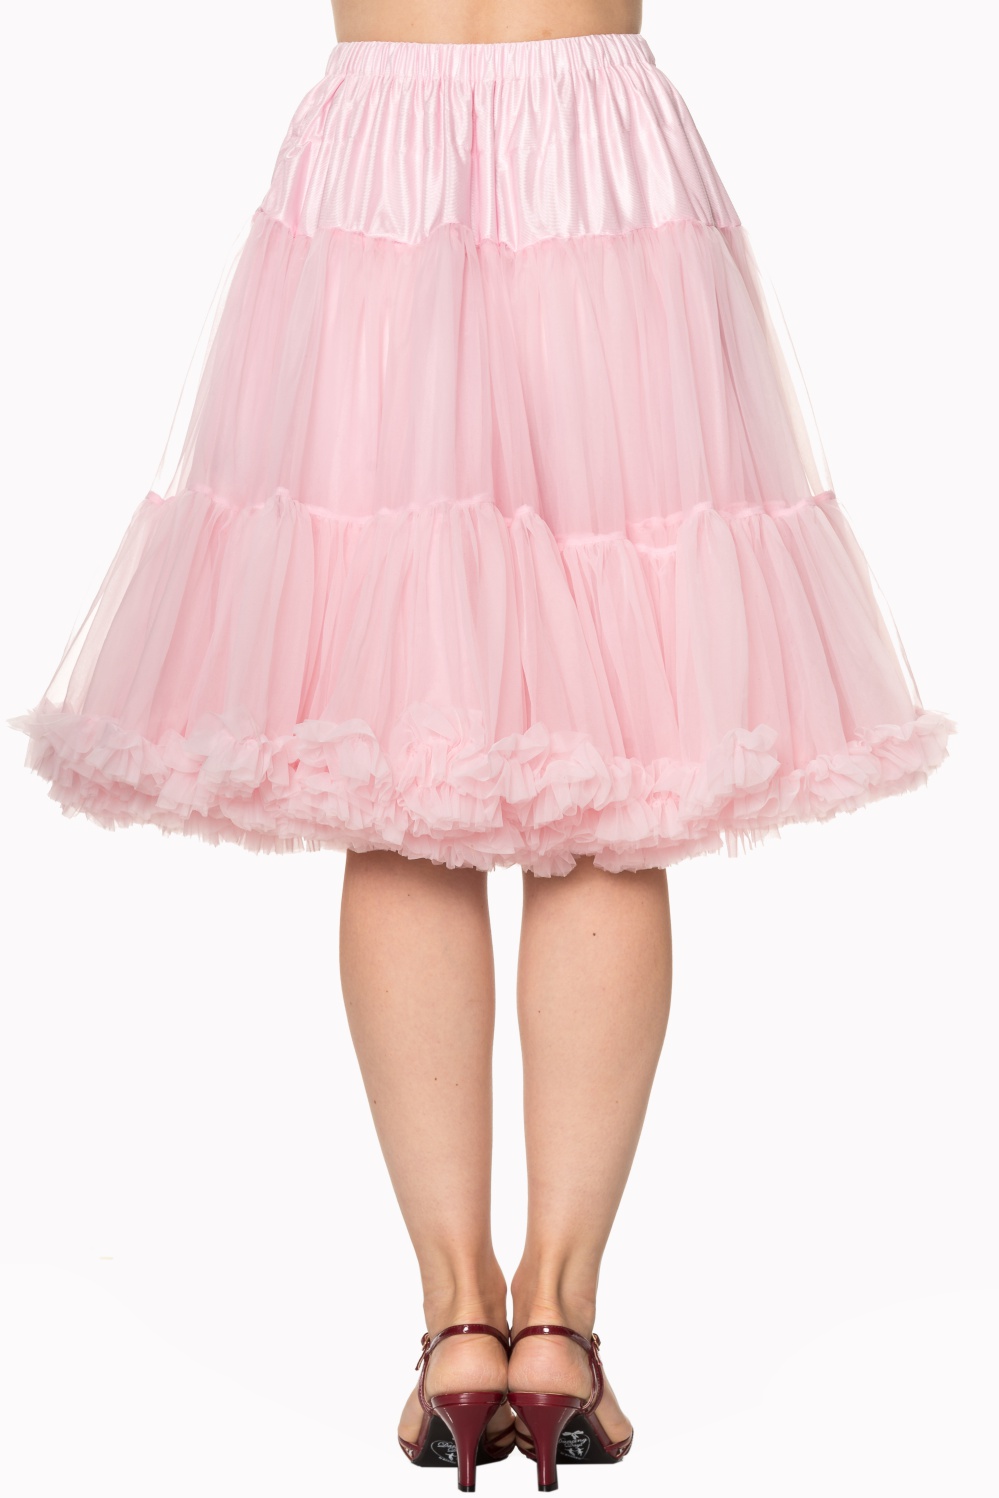 Banned Retro 50s Starlite Light Pink Petticoat